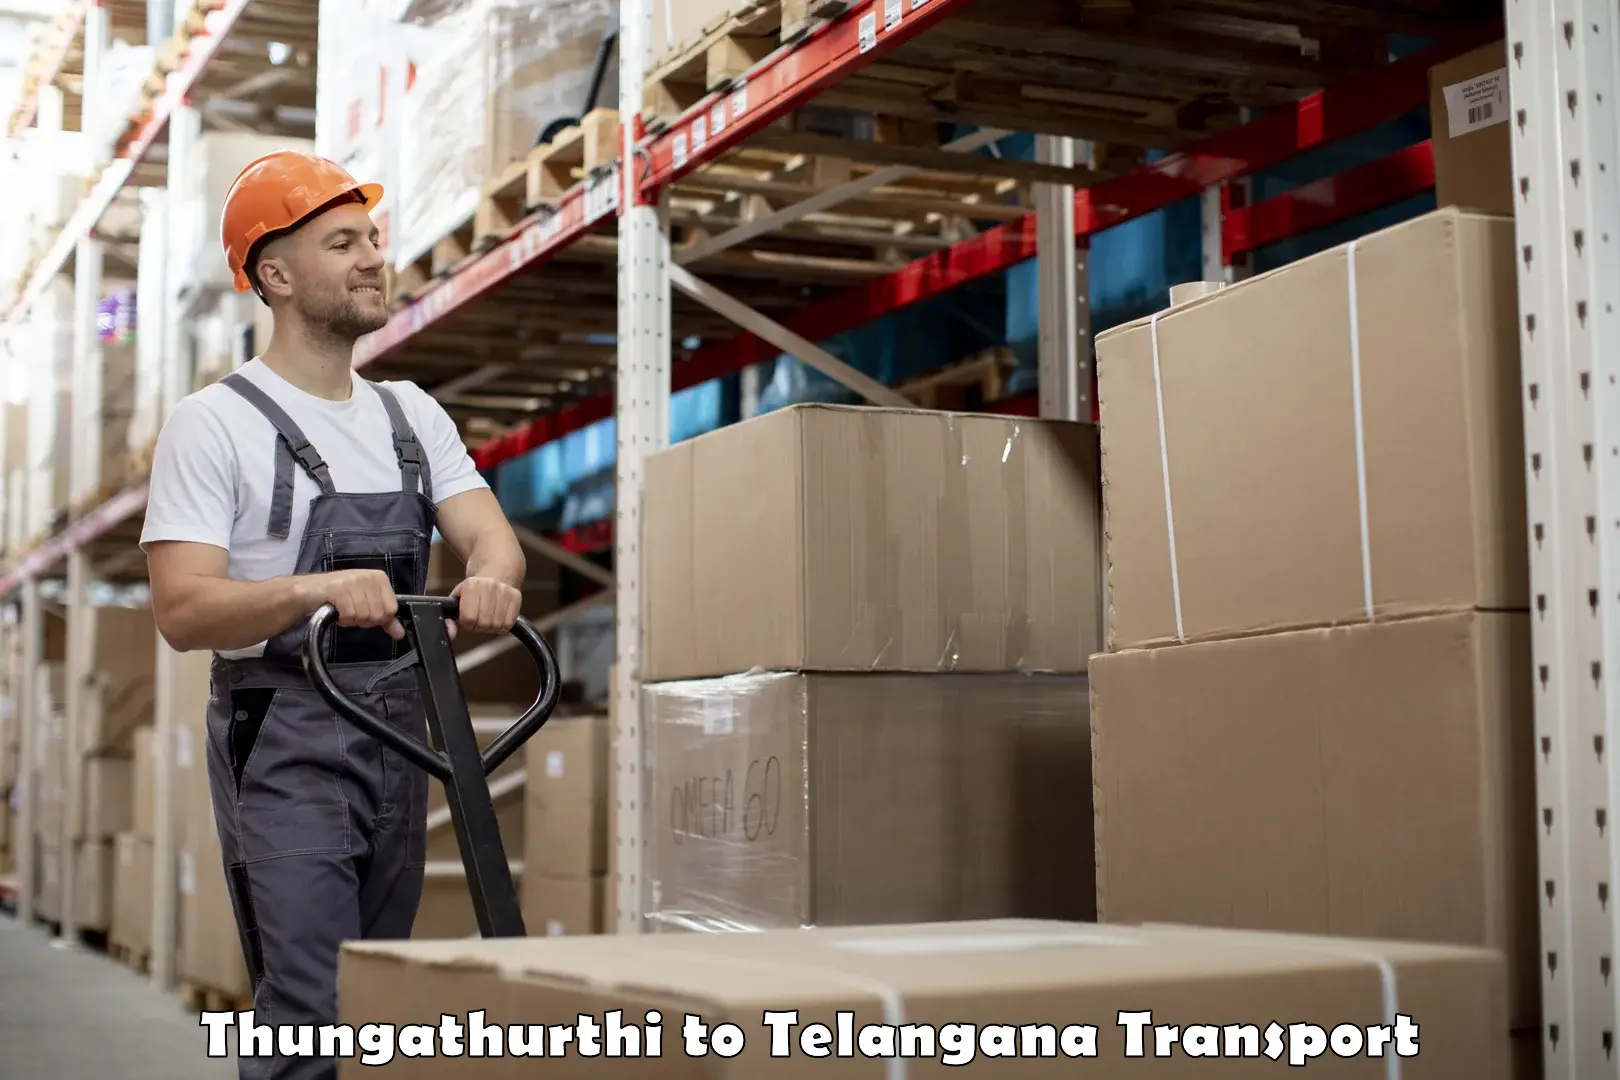 Domestic goods transportation services Thungathurthi to Nereducharla